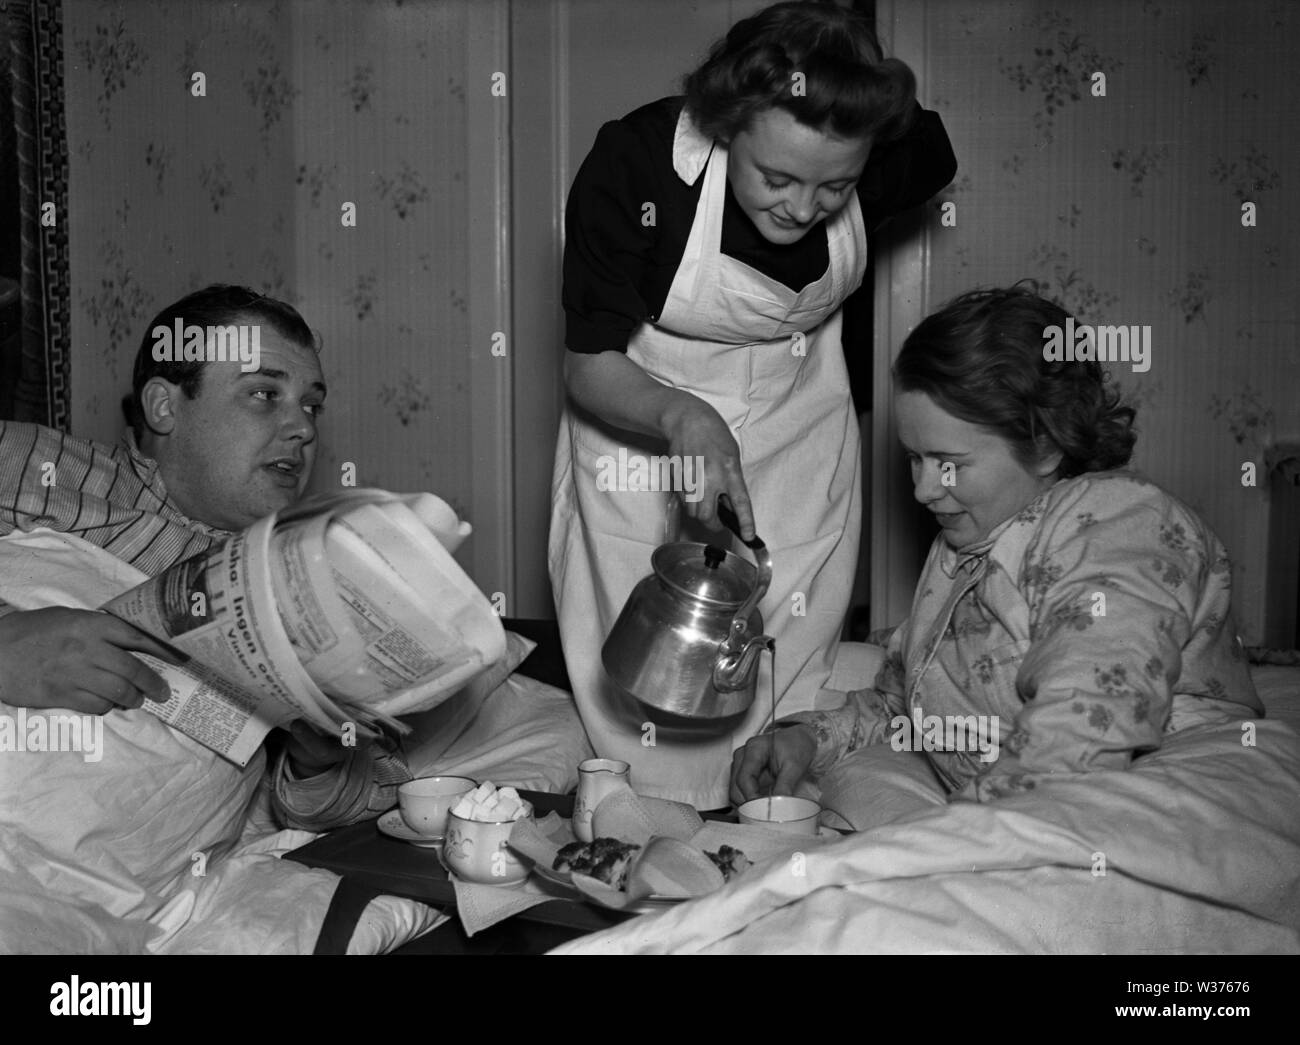 Leben in den 1940er Jahren. Eine junge Frau, die als Dienstmädchen serviert morgens Kaffee zu Herrn und Frau, während sie noch im Bett sind. Sie ist ordentlich in einem weißen Schürze gekleidet. Schweden 1940. Kristoffersson ref 55-8 Stockfoto